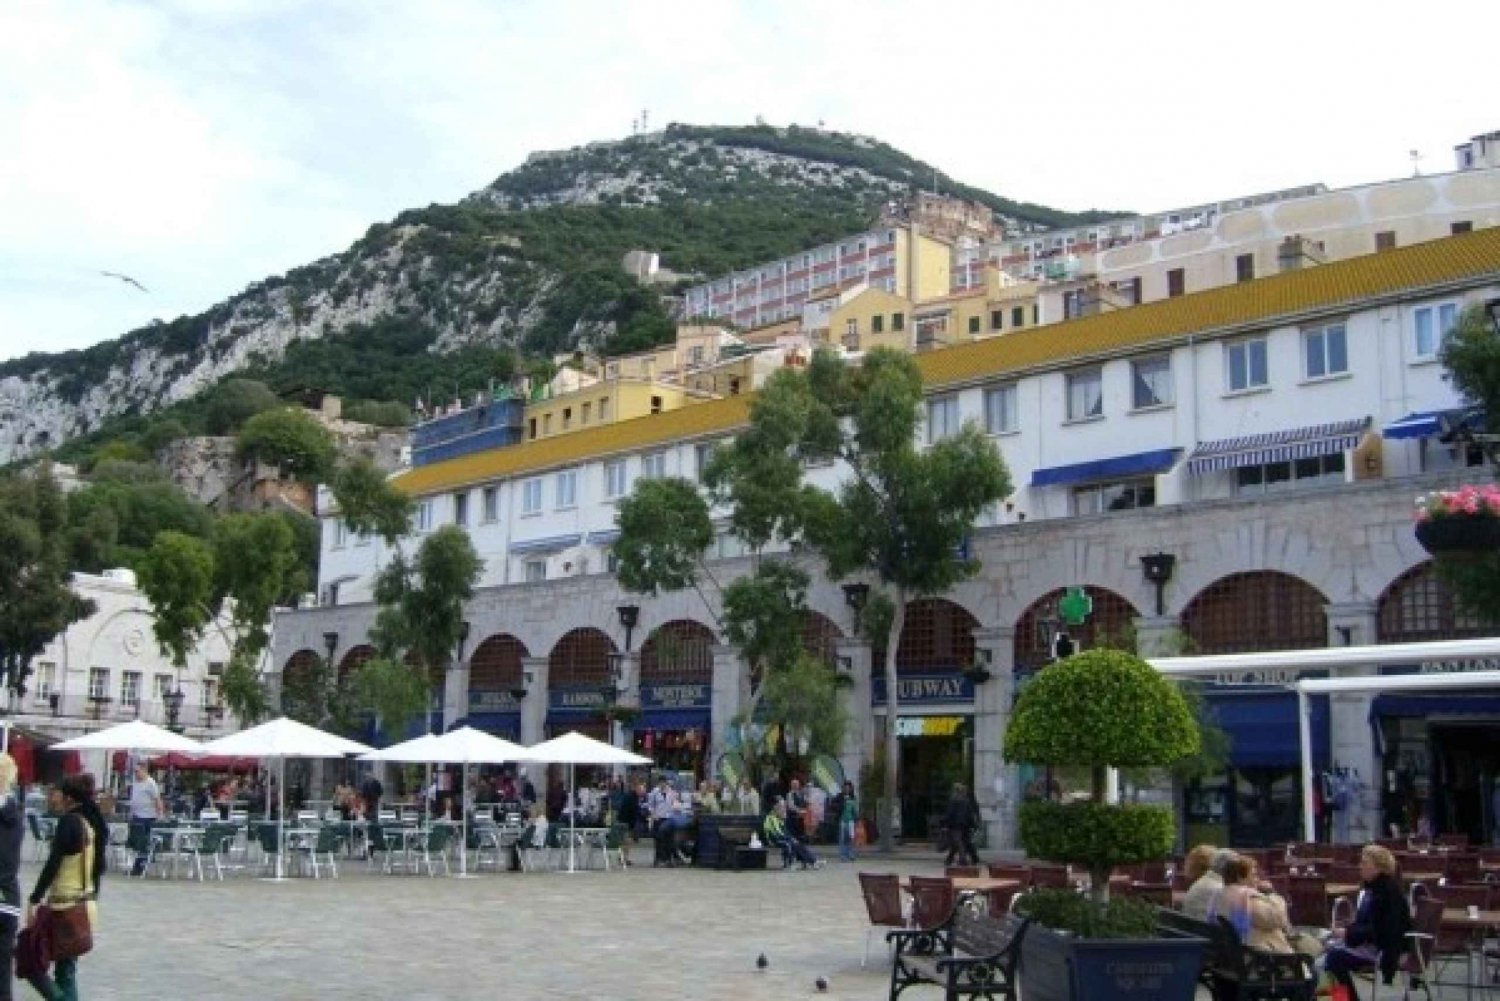 Stadswandeling door Gibraltar